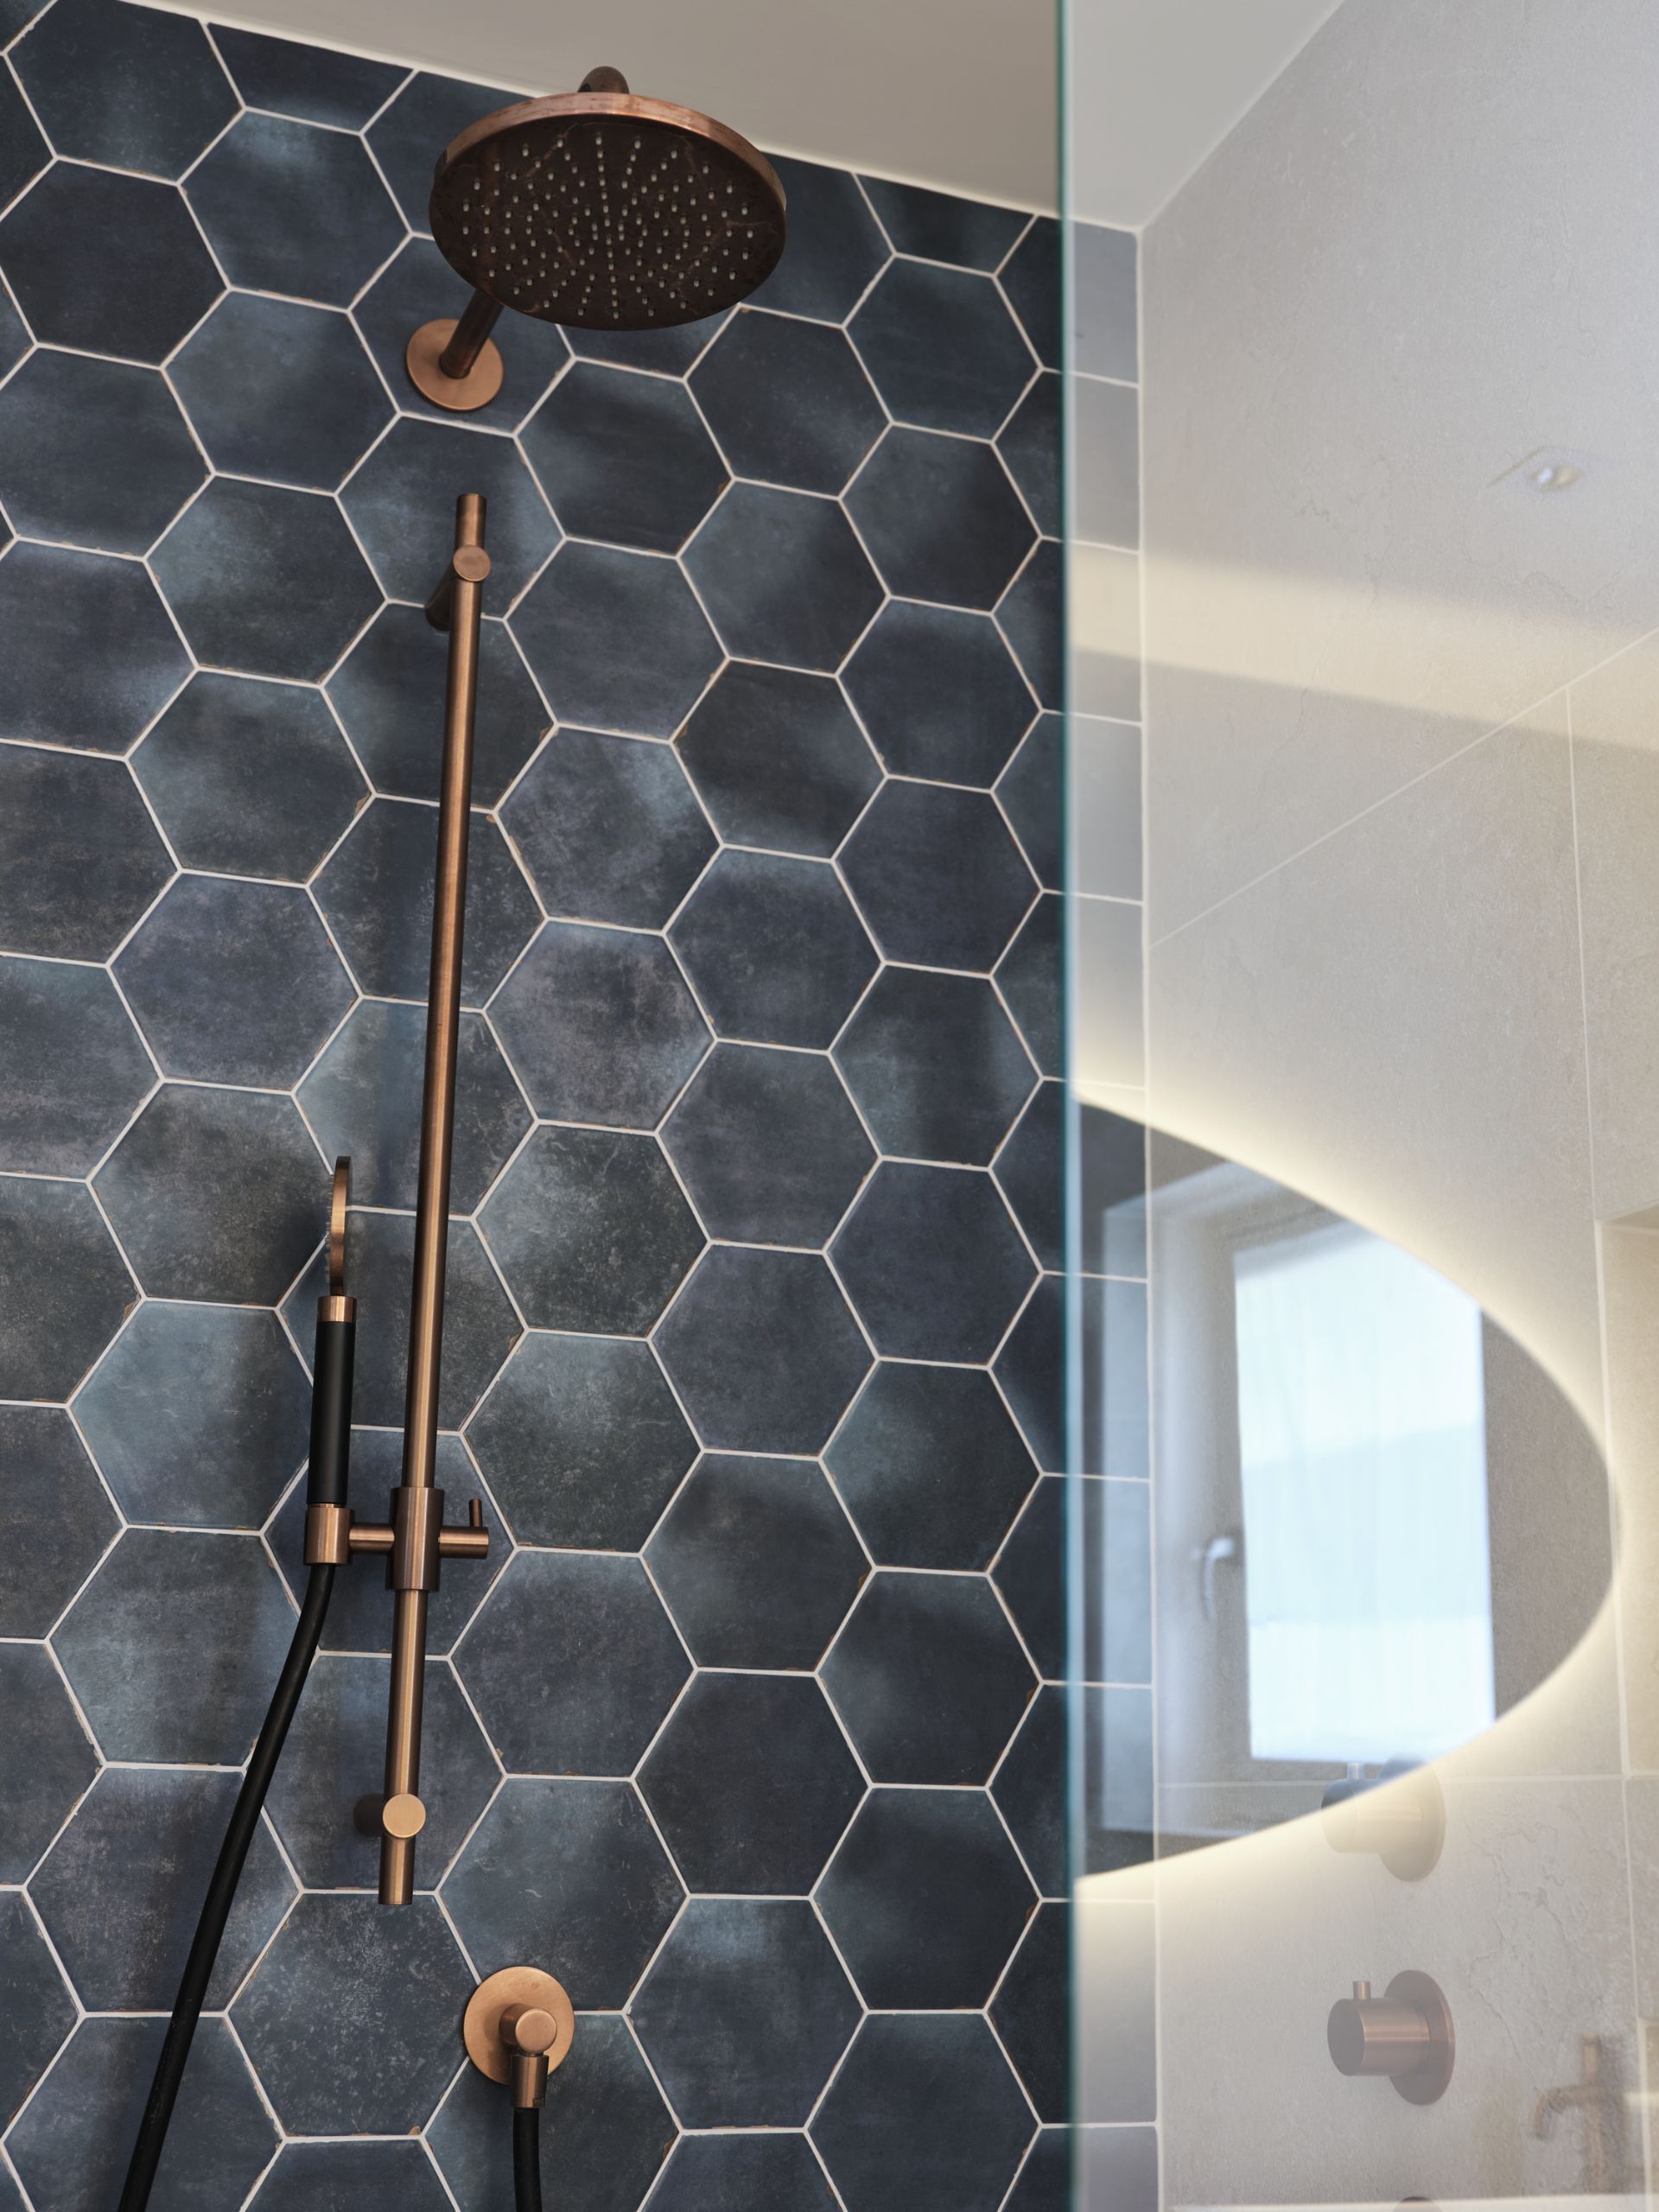 Foto: een frisse look met blauwe hexagon tegels    eerste kamer badkamers   006